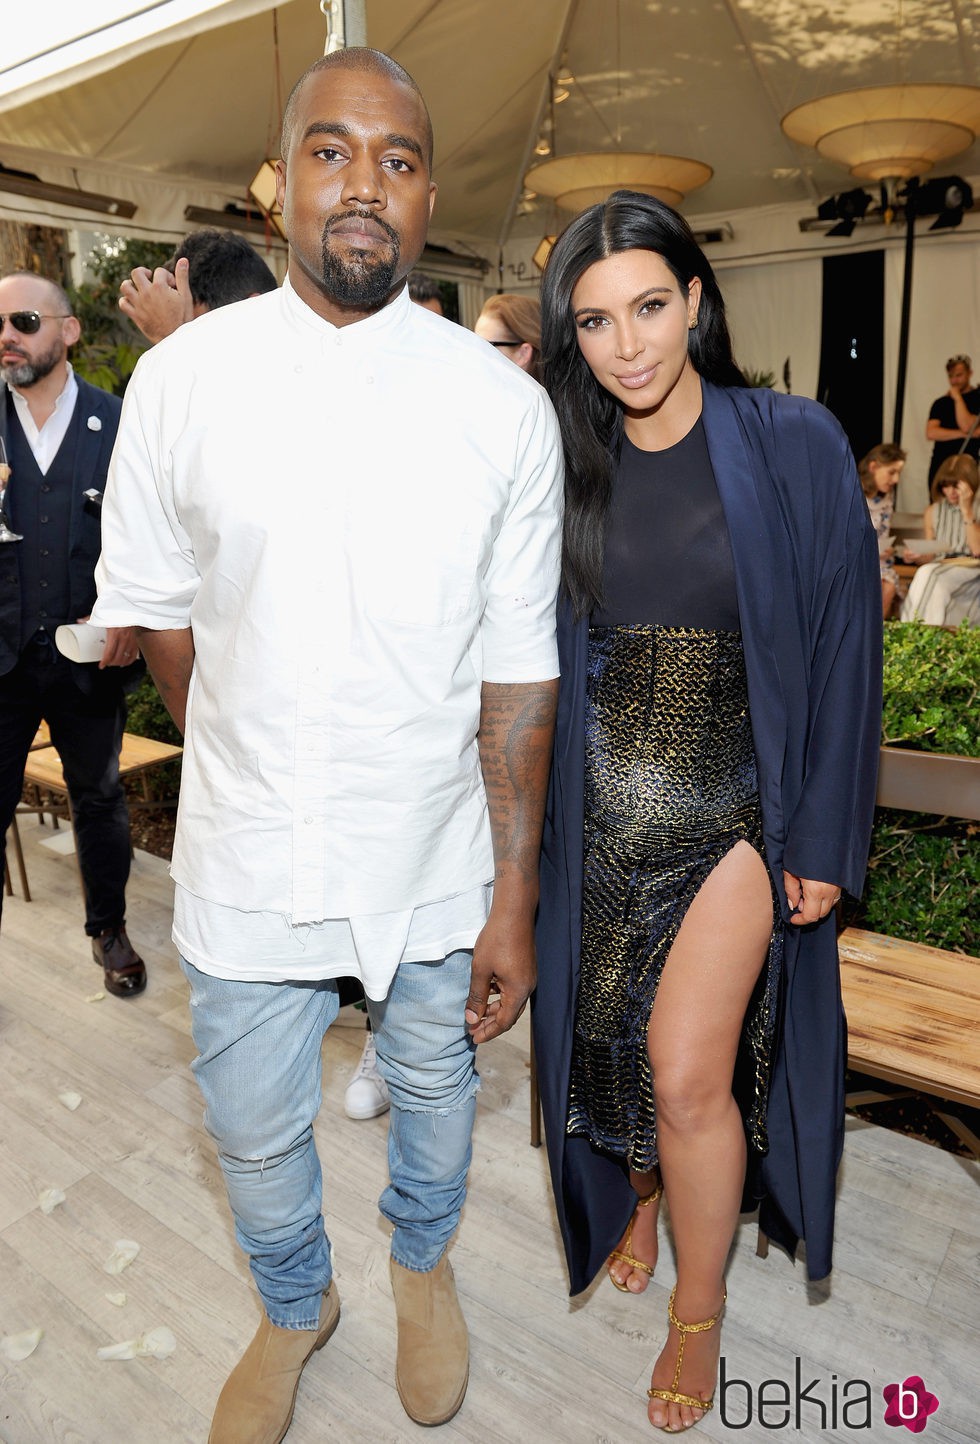 Kim Kardashian y Kanye West en un evento de la publicación Vogue